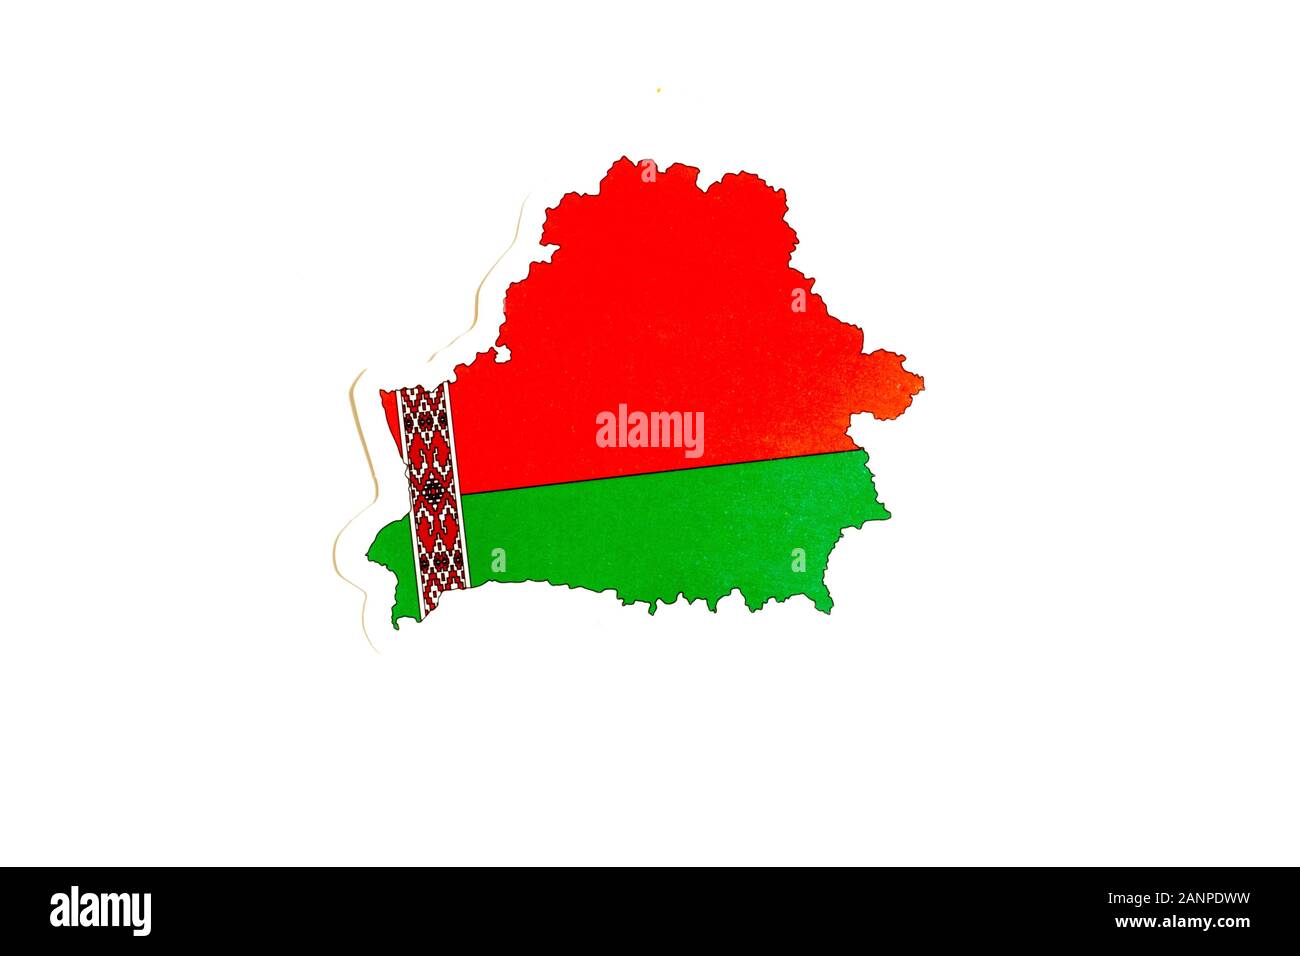 Los Angeles, California, Stati Uniti d'America - 17 gennaio 2020: Bandiera nazionale della Bielorussia. Contorno del paese su sfondo bianco con spazio di copia. Illustrazione politica Foto Stock